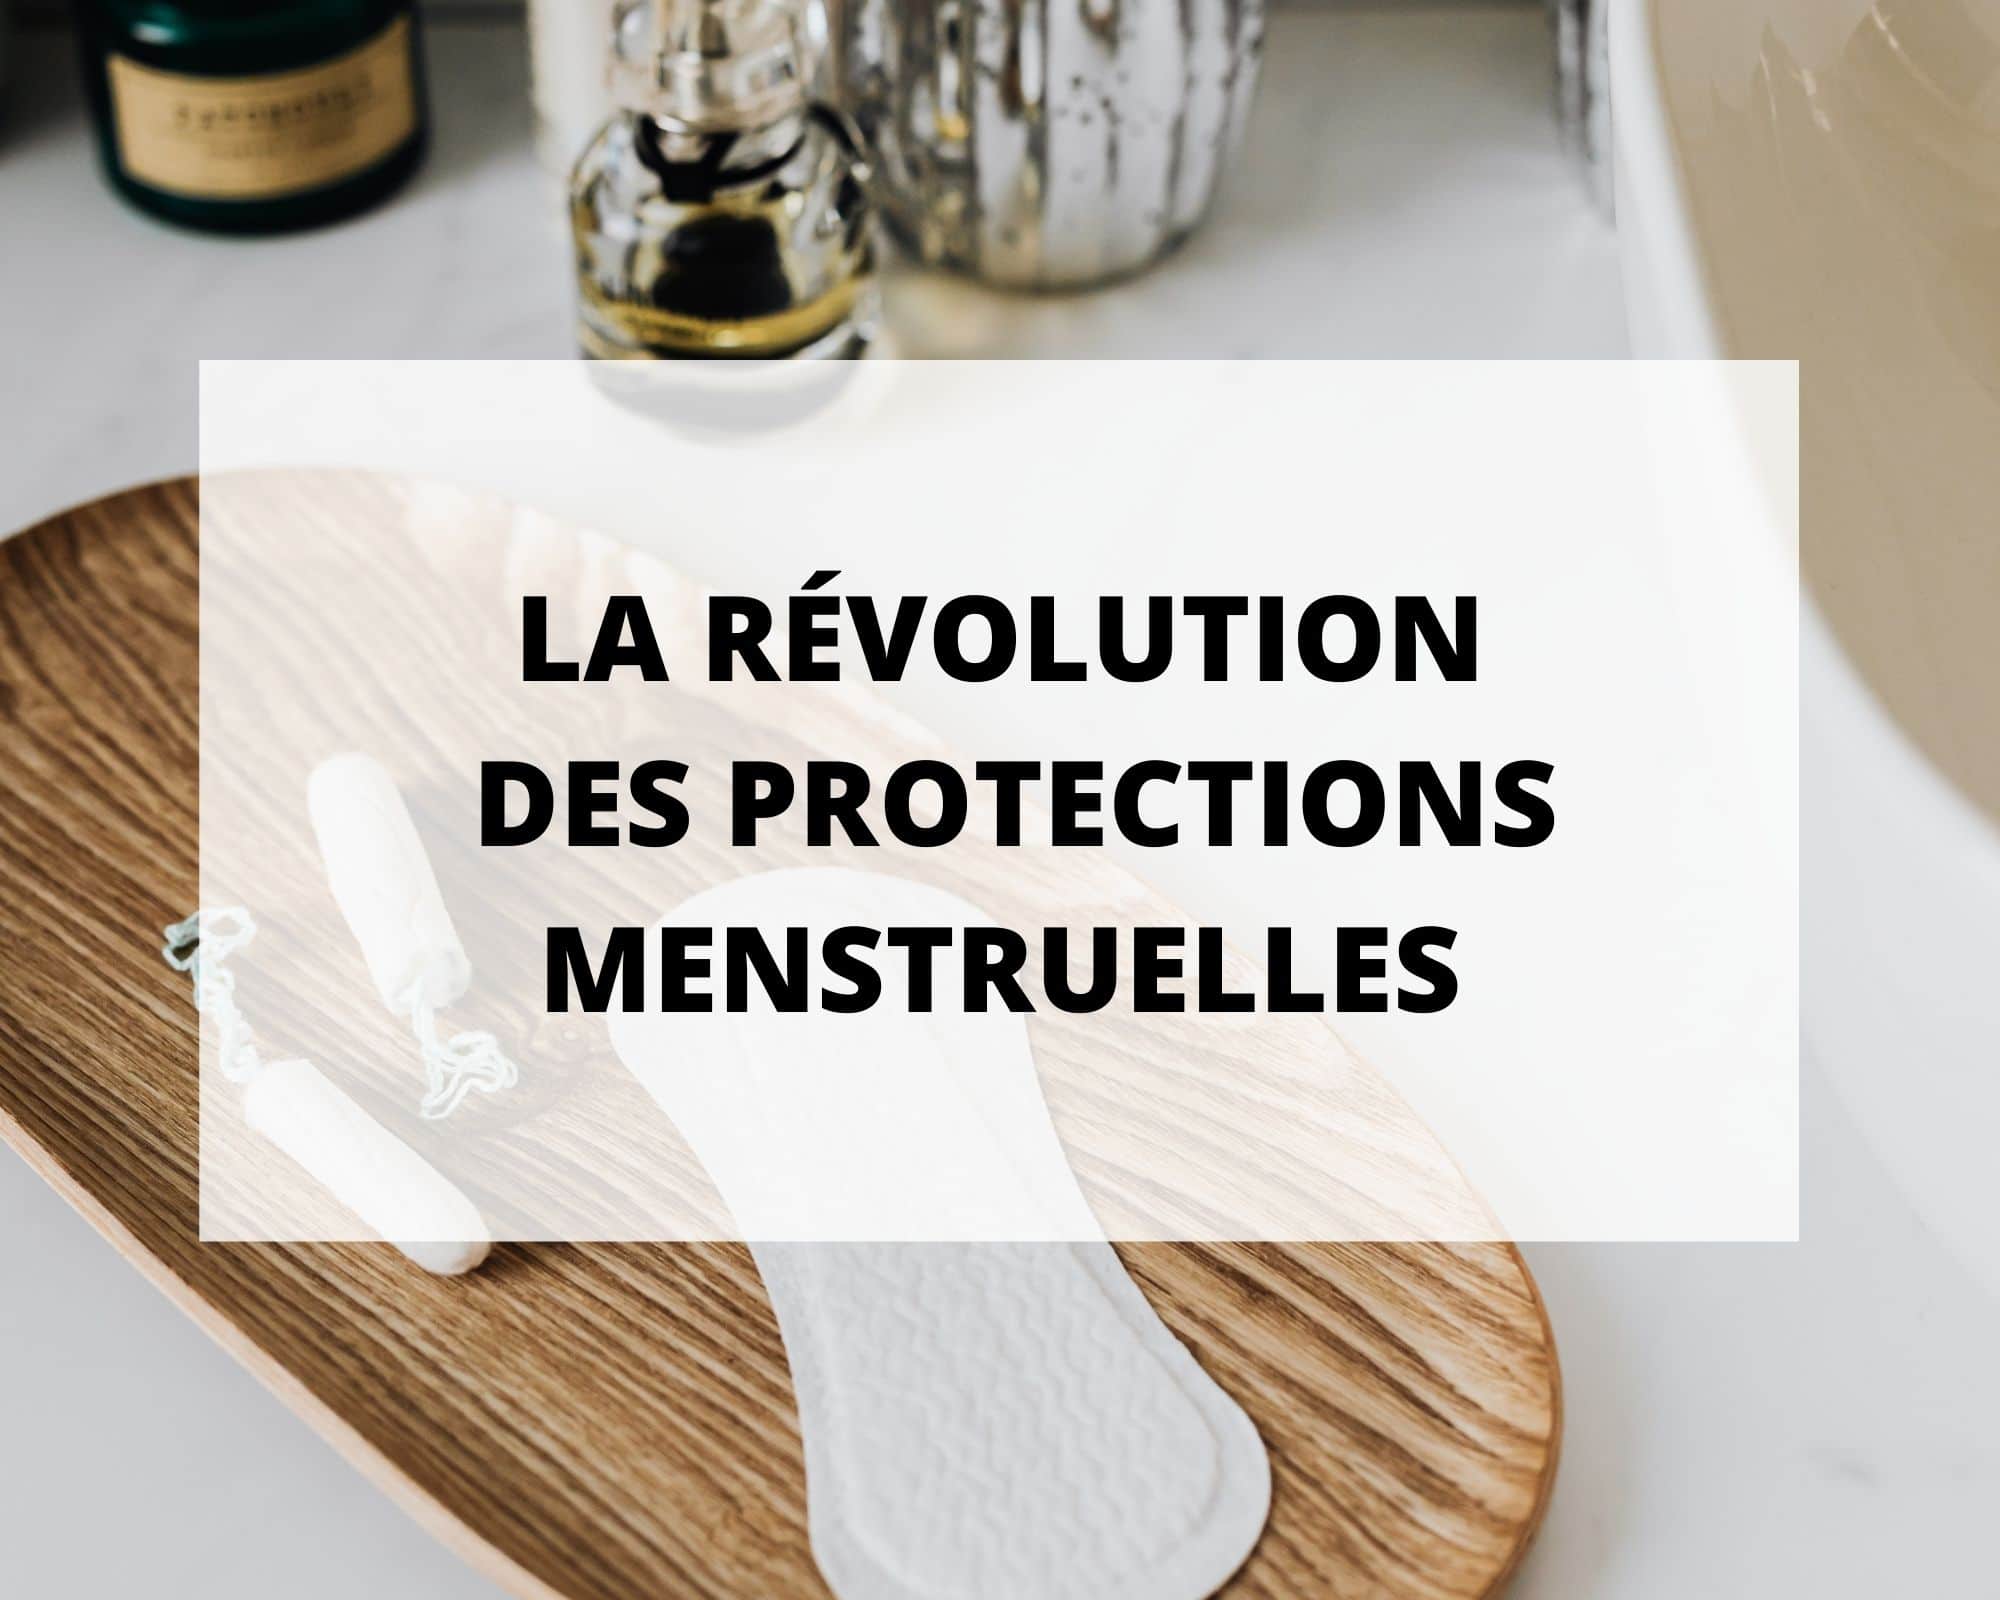 La révolution des protections menstruelles, tous les conseils de Sans Prétention pour choisir votre culotte menstruelle.